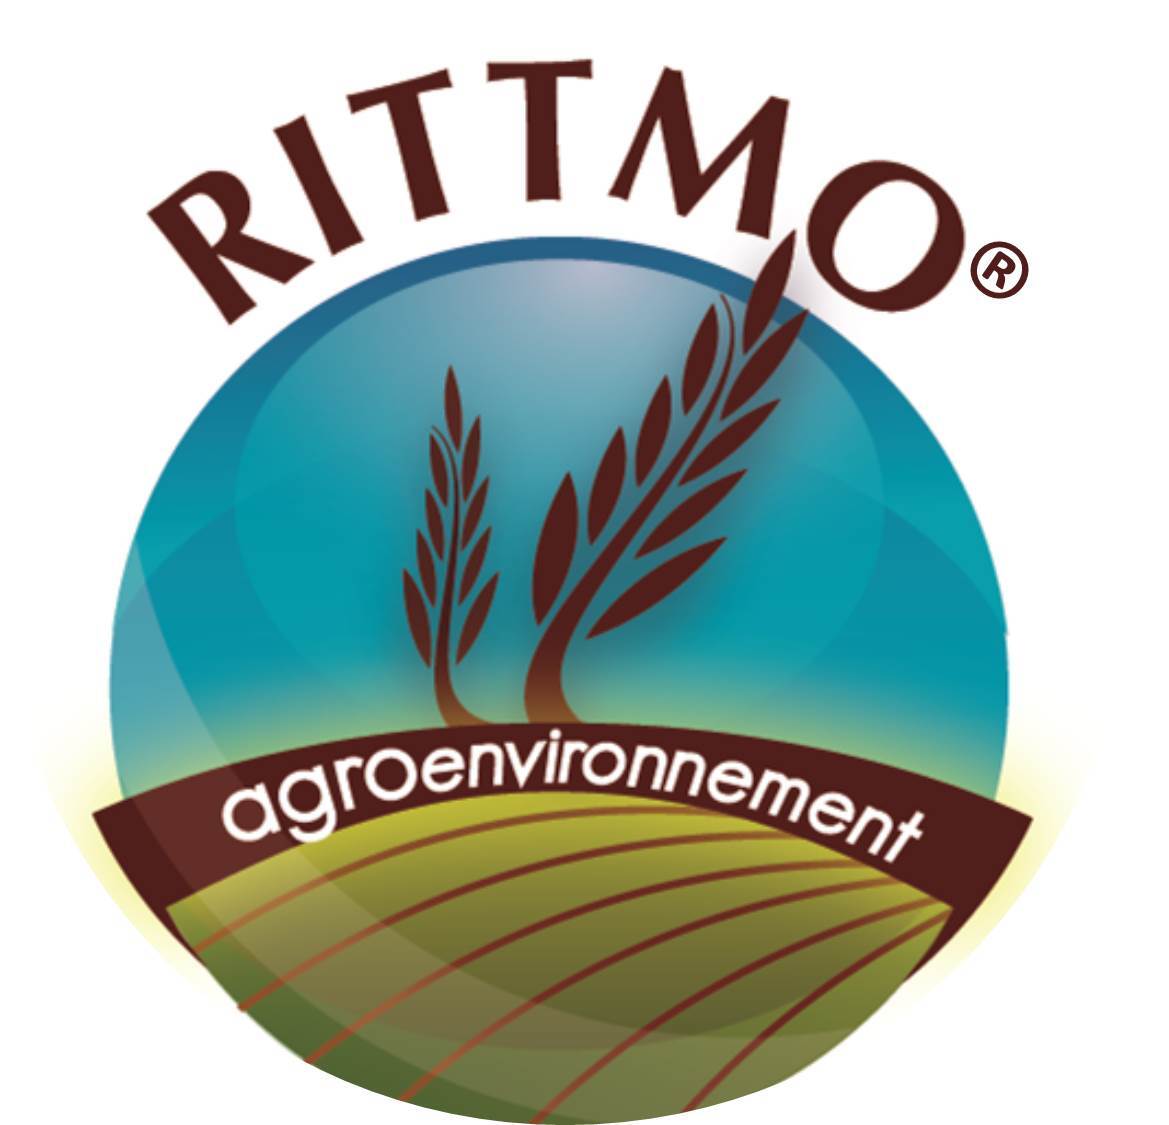 RITTMO AGROENVIRONNEMENT